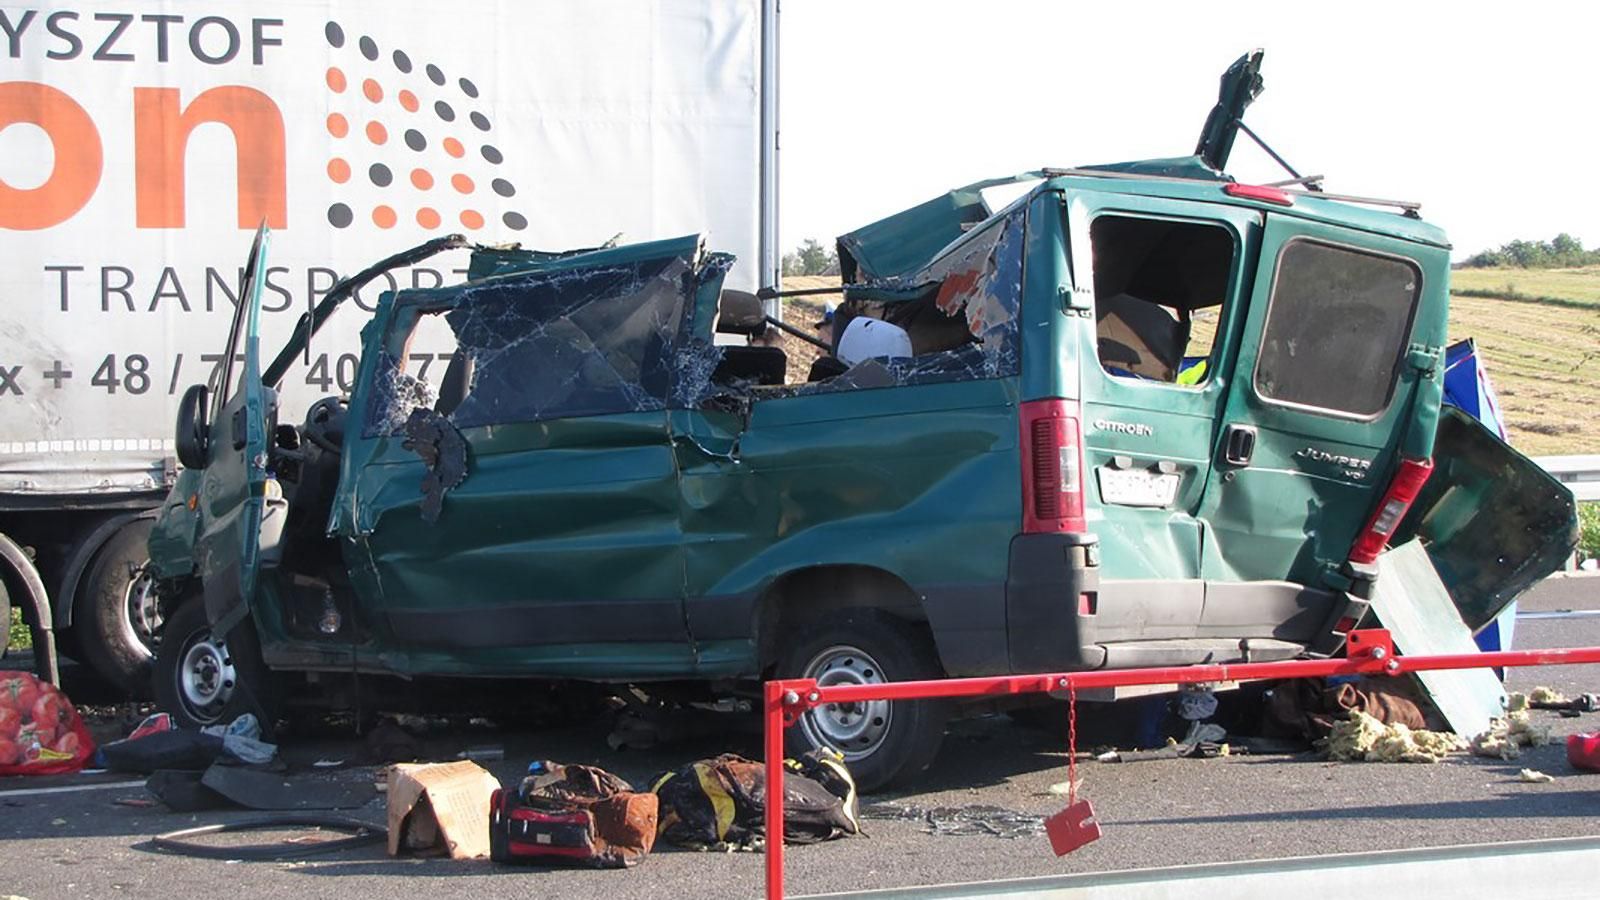 Появились страшные фото аварии с украинцами в Люблине